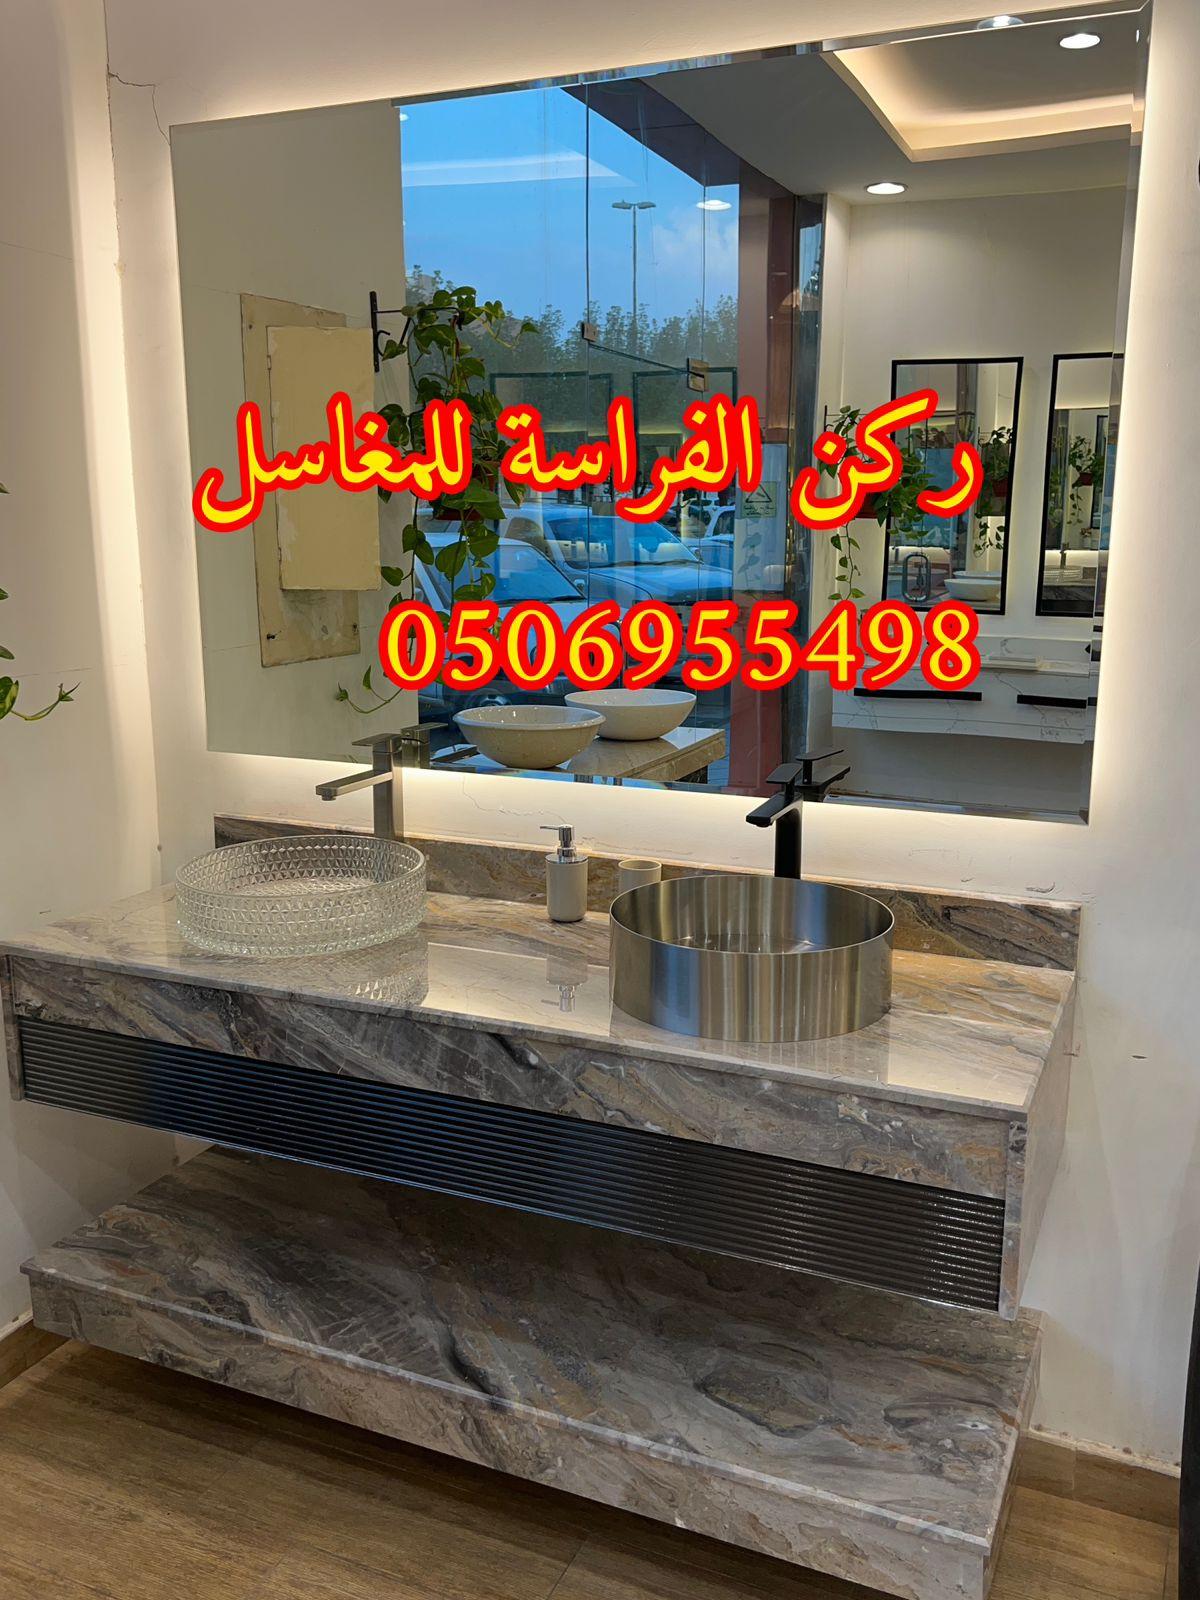 الرياض - تفصيل ديكورات مغاسل حمامات رخام في الرياض,0506955498 399632616